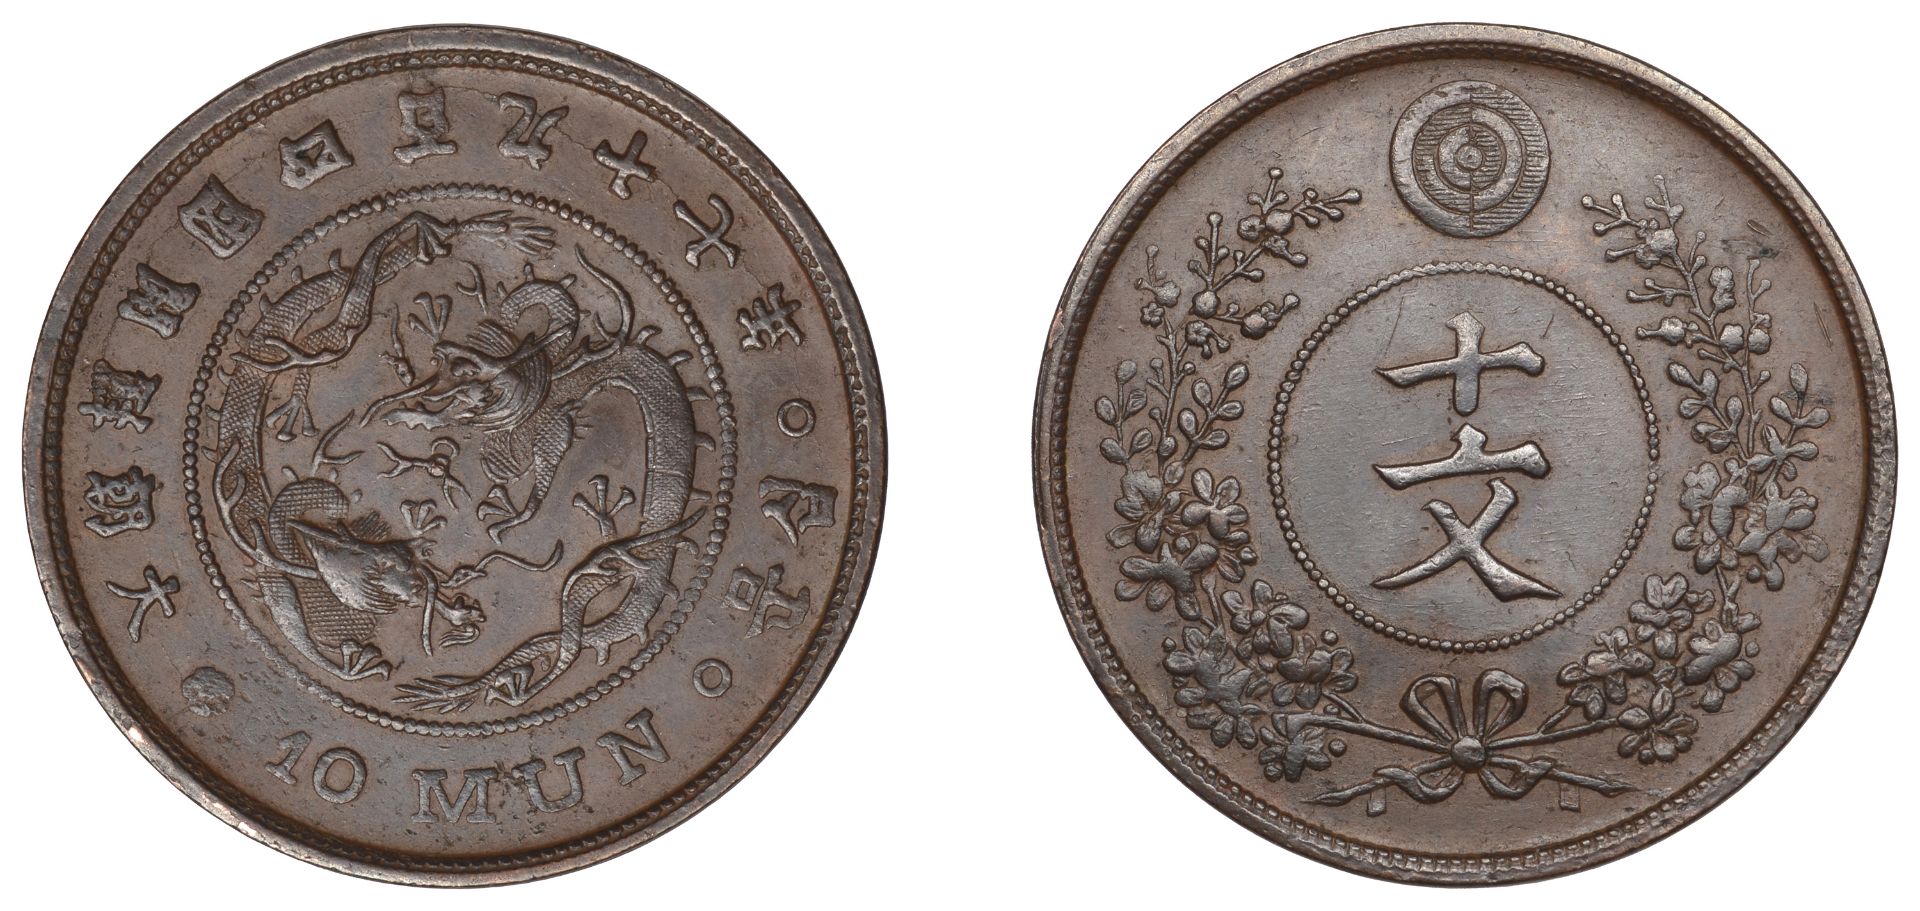 Korea, Yi Hyong, 10 Mun, yr 497 [1888], 6.58g/5h (KM 1102). About extremely fine Â£300-Â£400